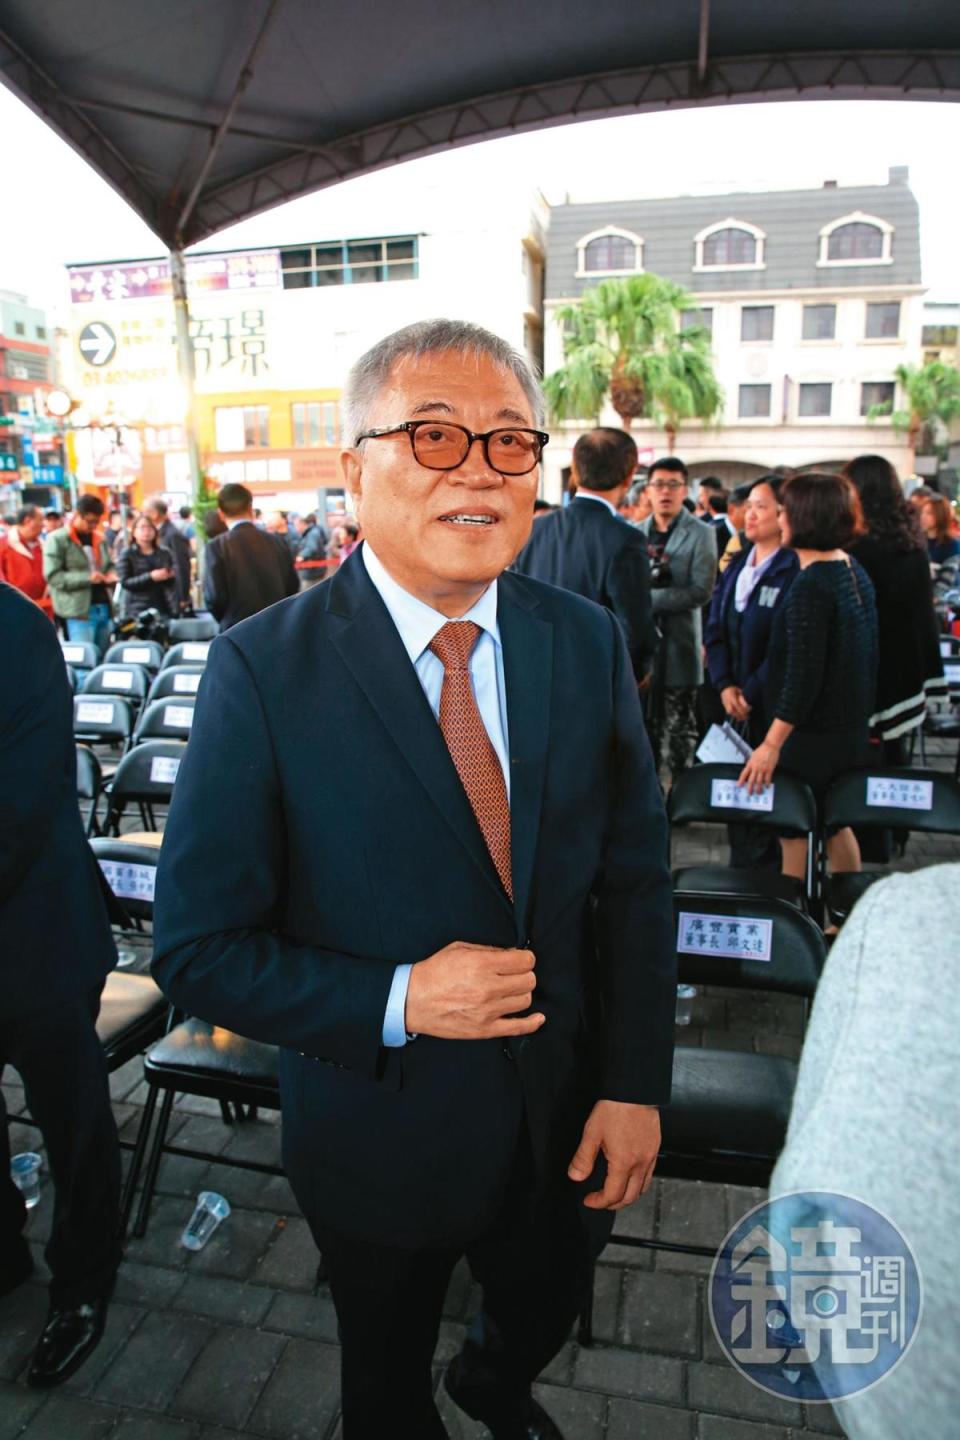 賀鳴鐸過去在廣豐負責海外事業，主導香港大中華公司交易案。